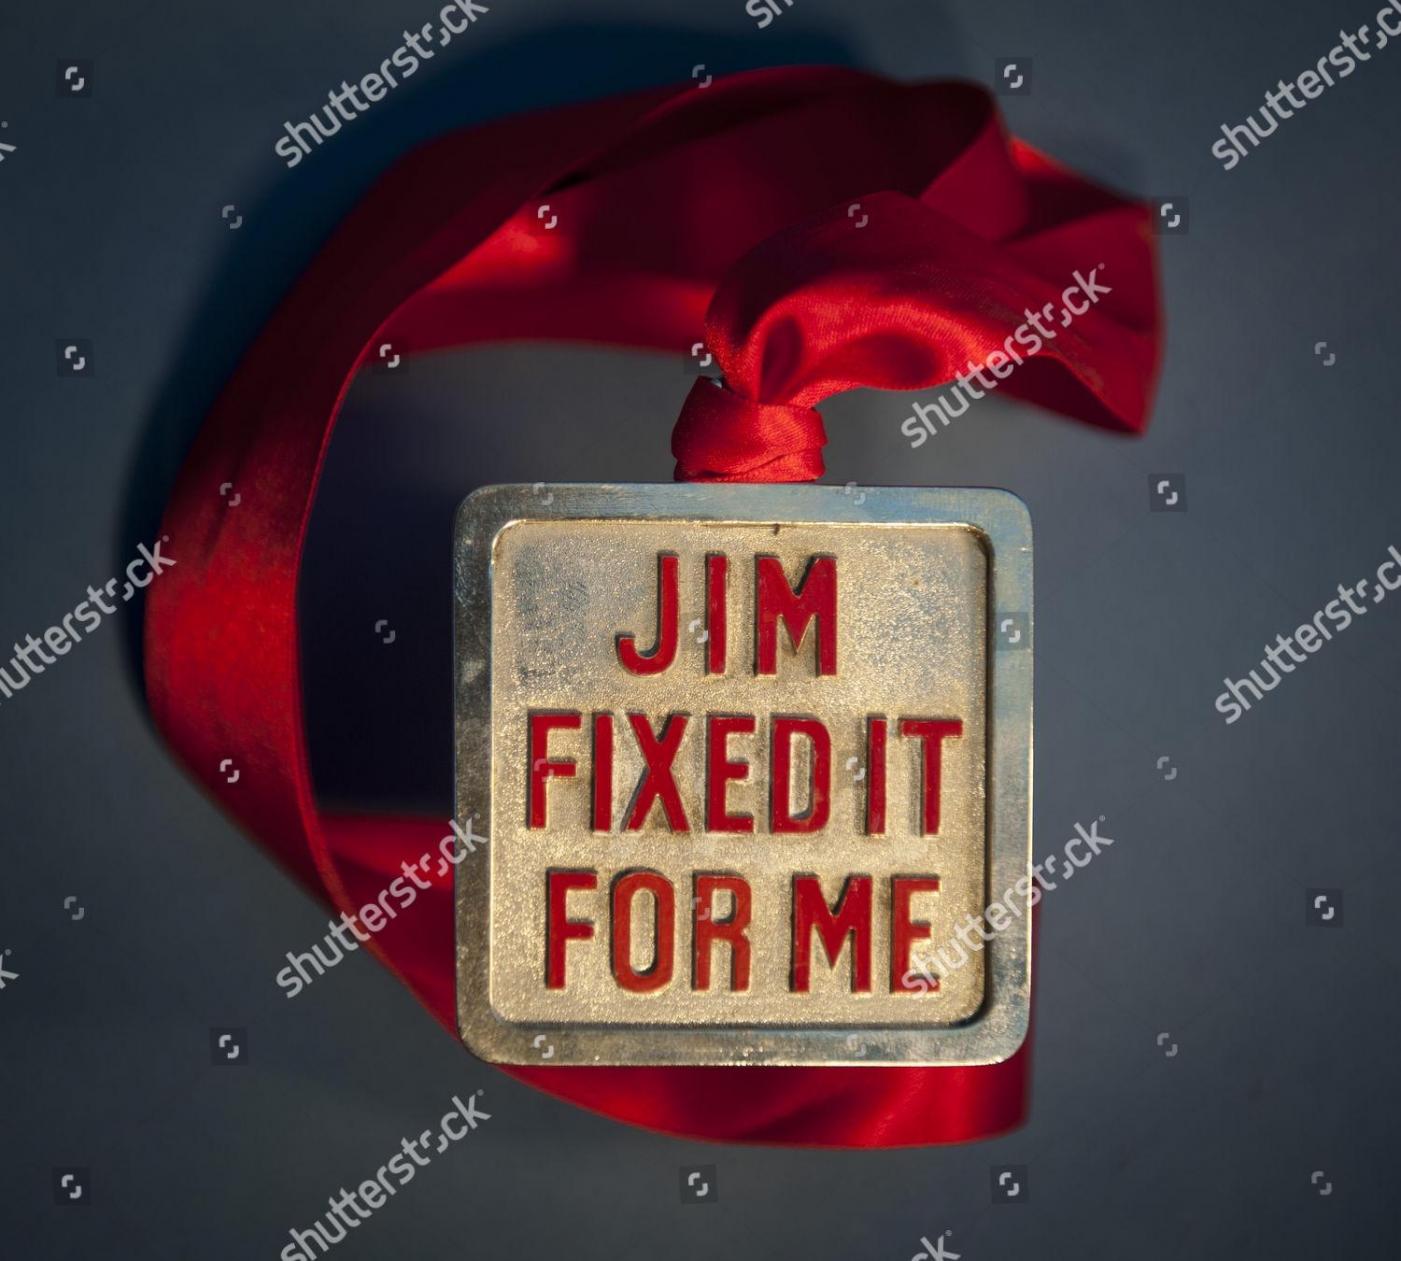 jimll-fix-it-badge-shutterstock-editorial-1899921a.jpg